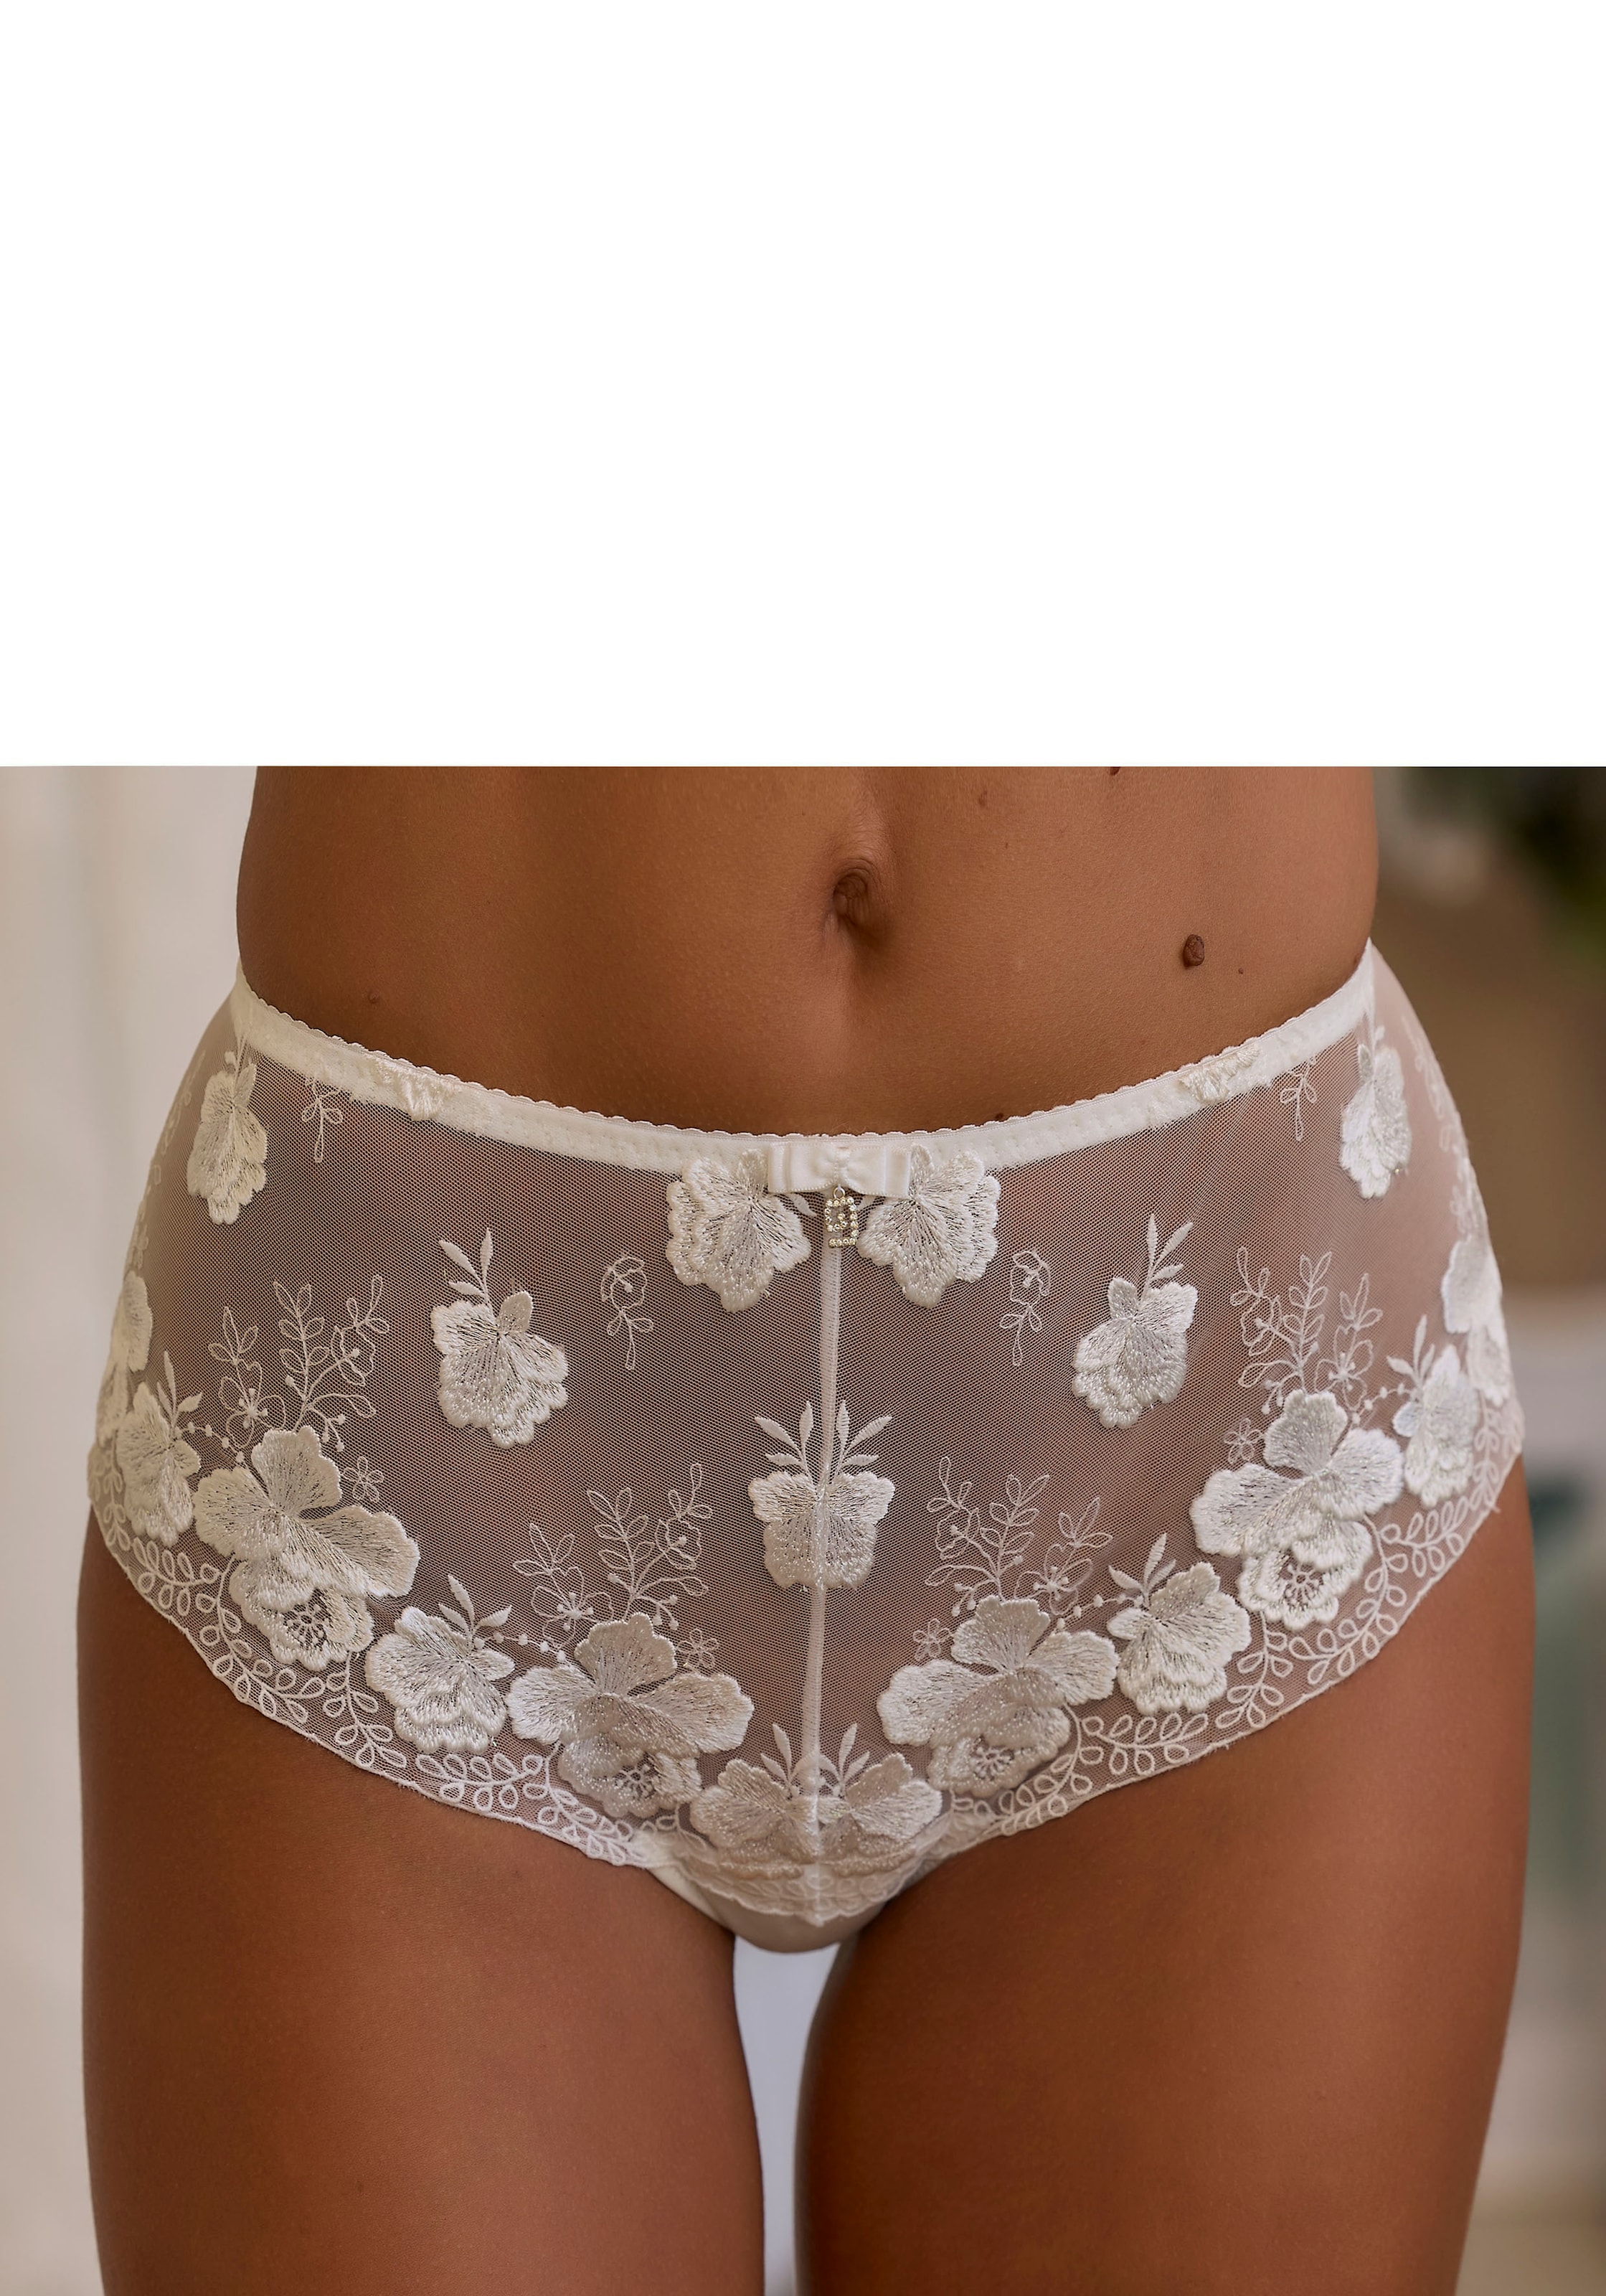 Nuance Panty, mit edler Stickereispitze in floraler Optik » LASCANA |  Bademode, Unterwäsche & Lingerie online kaufen | Klassische Panties